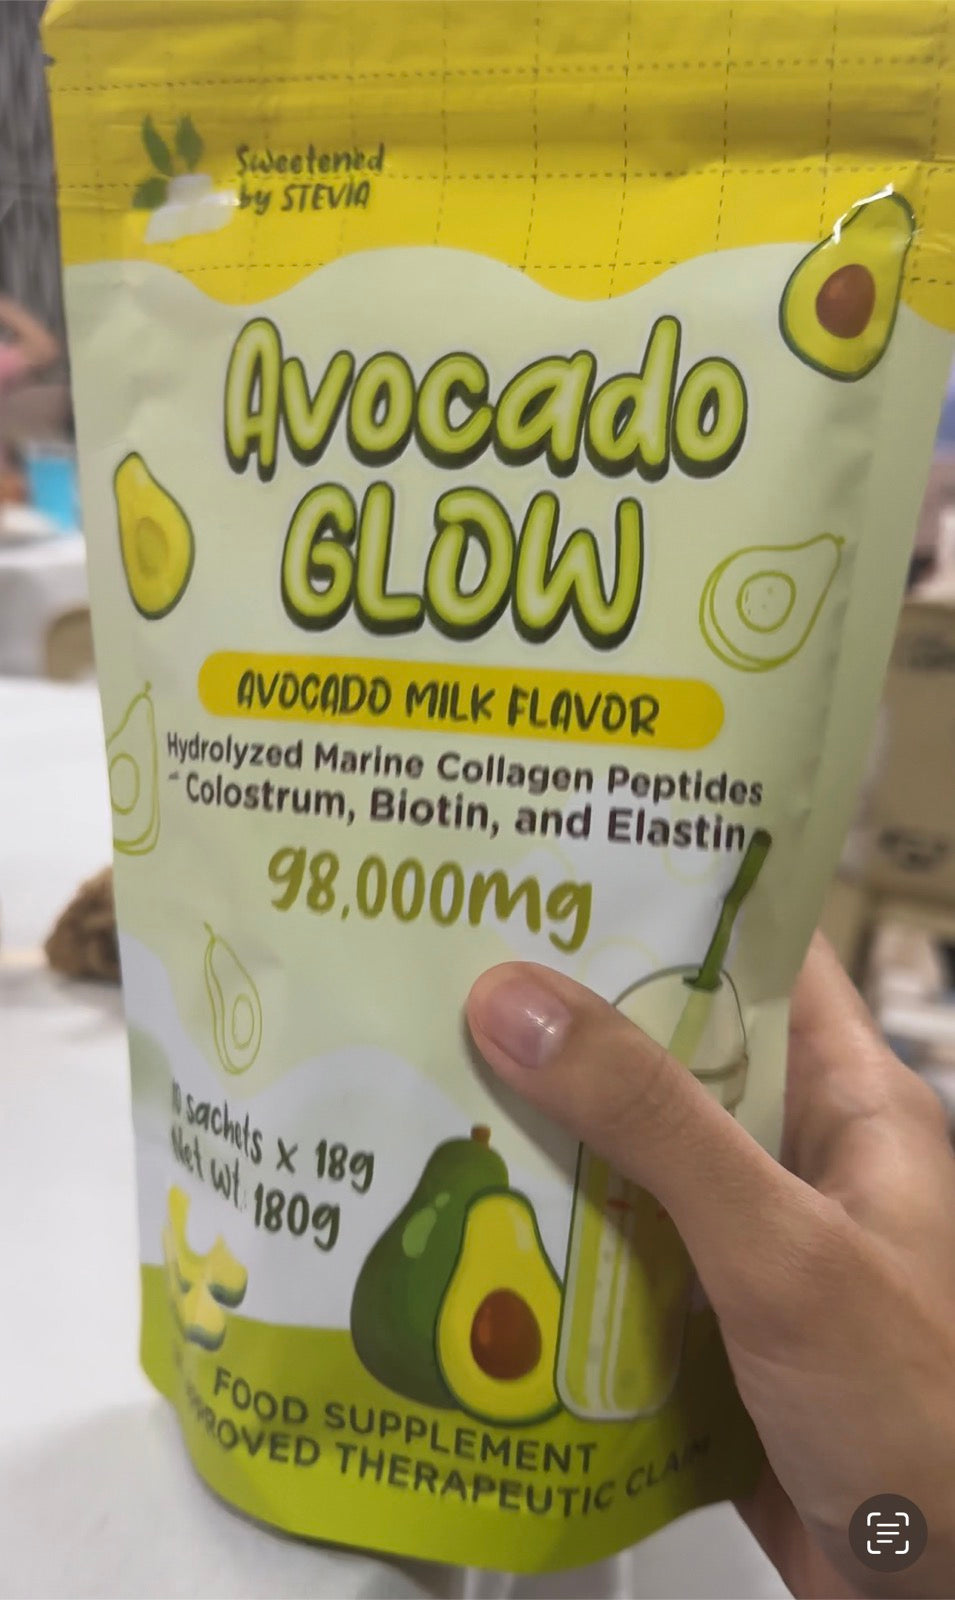 Avocado Glow 95,000mg